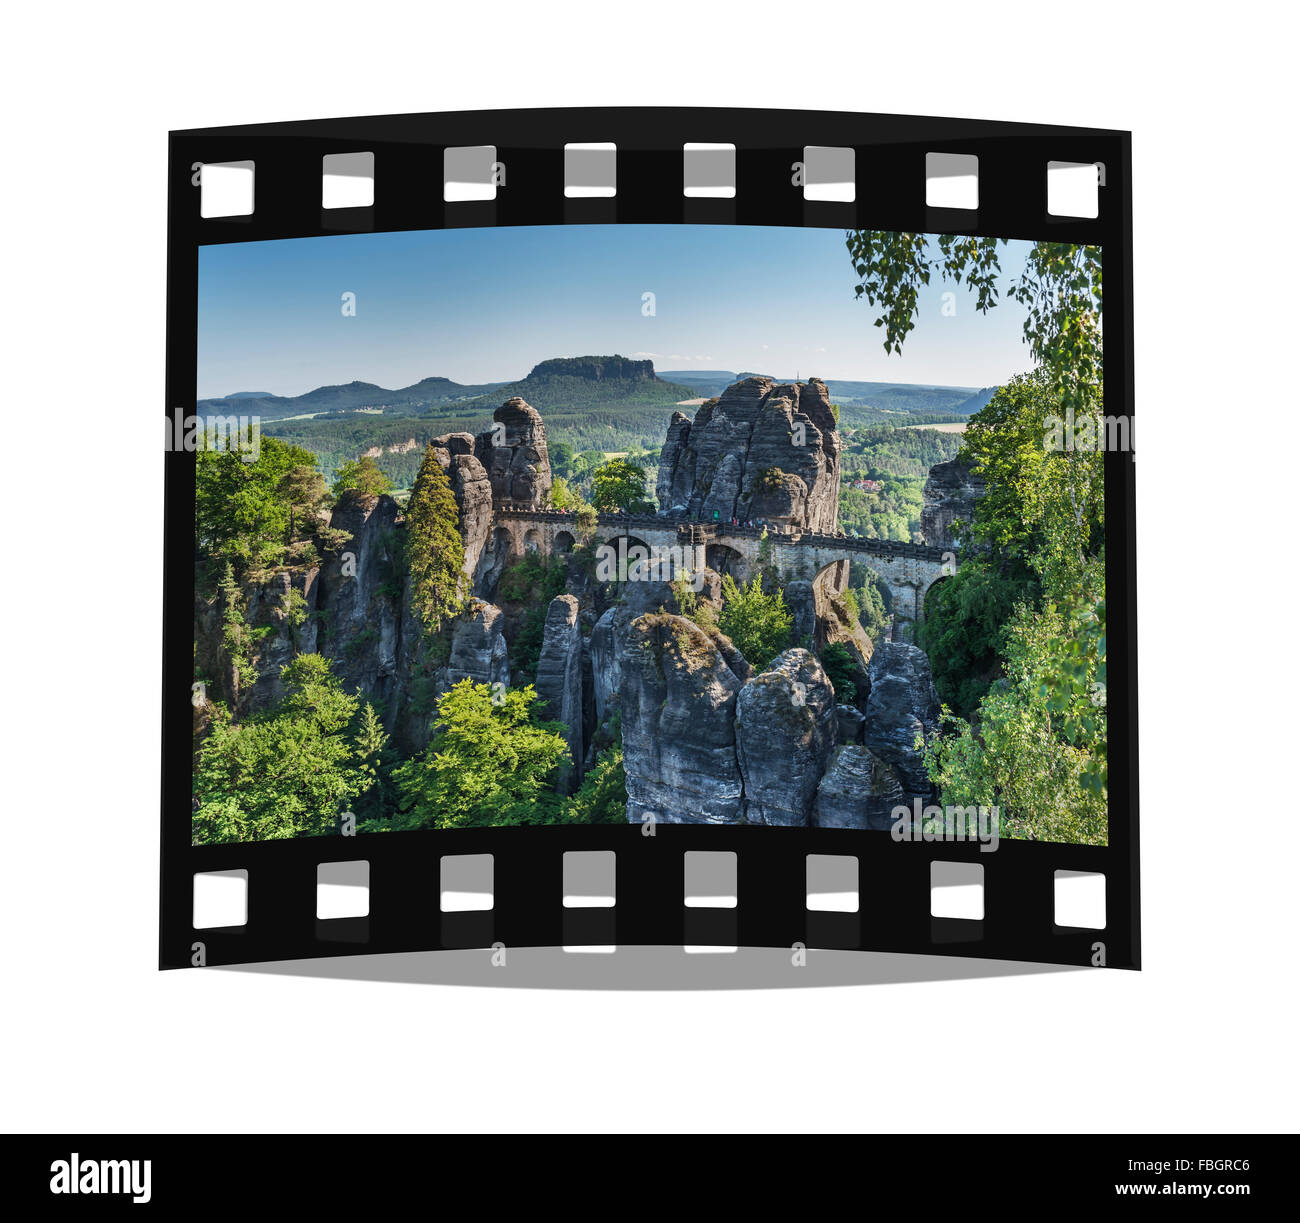 Formazione di roccia Bastei (Bastion) e Table Mountain Lilienstein, Lohmen, Svizzera Sassone vicino a Dresda, Sassonia, Germania, Europa Foto Stock